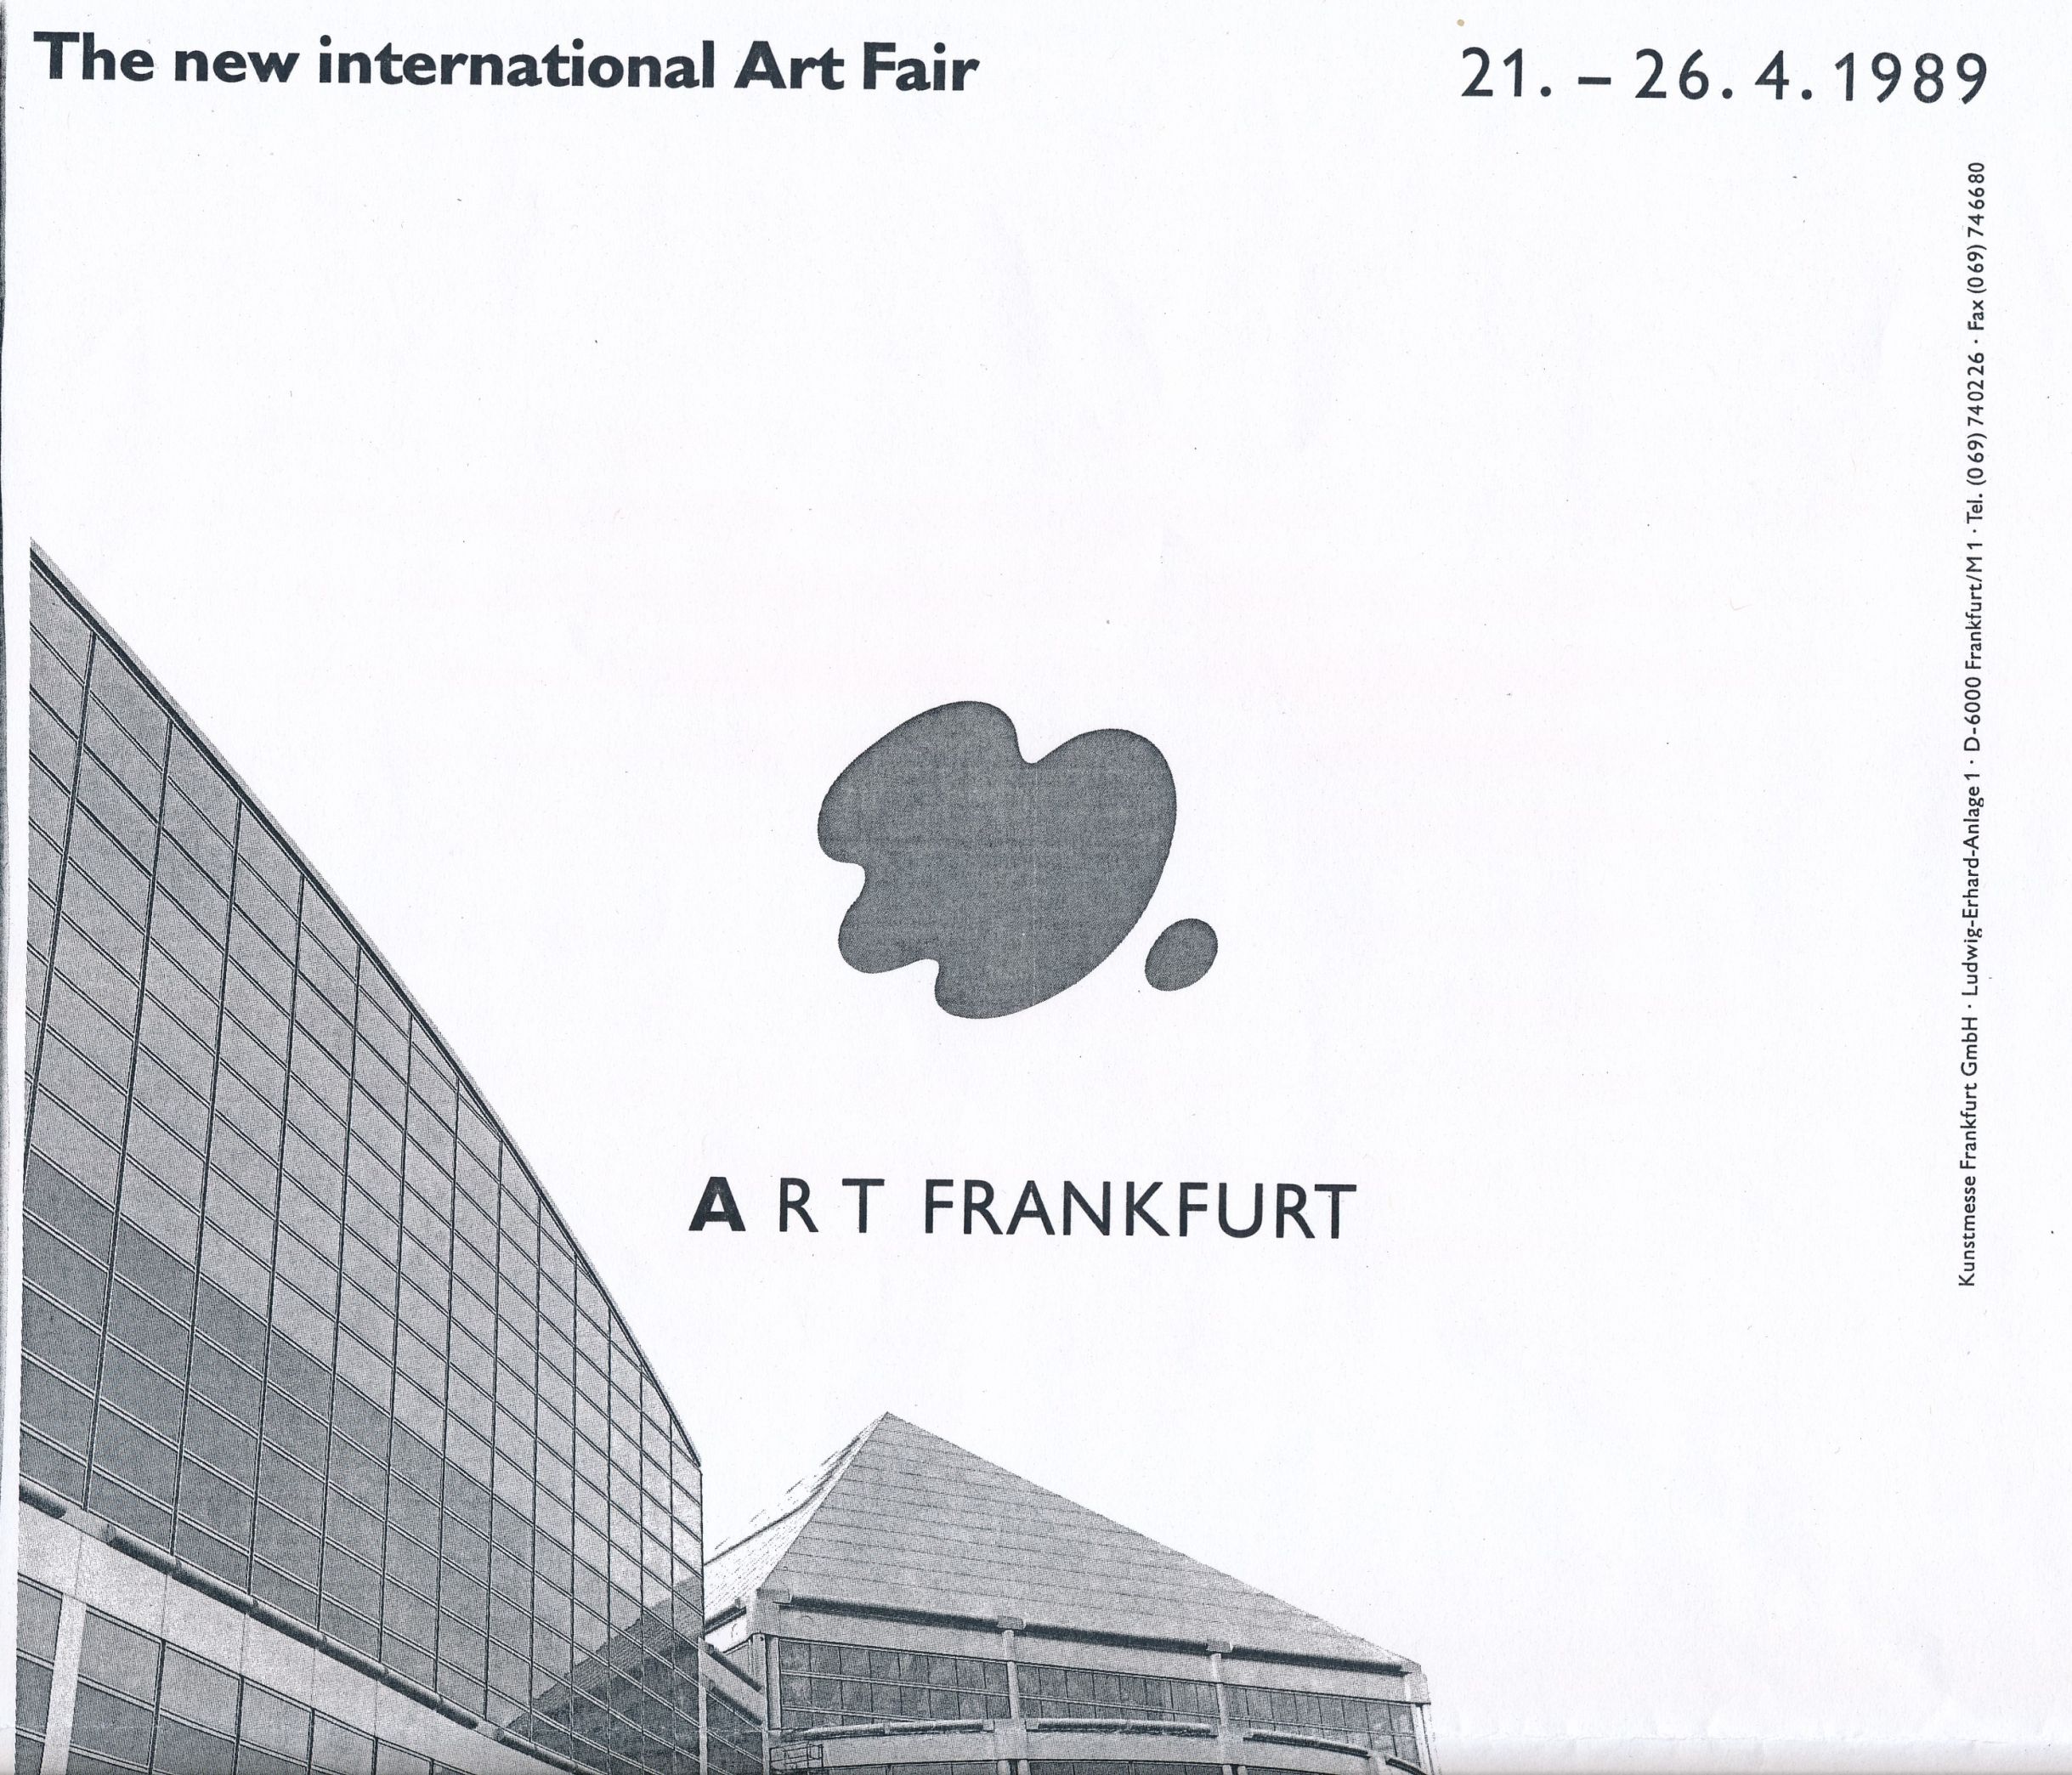 Couverture du catalogue d’exposition The new international Art Fair, Francfort, 1989.